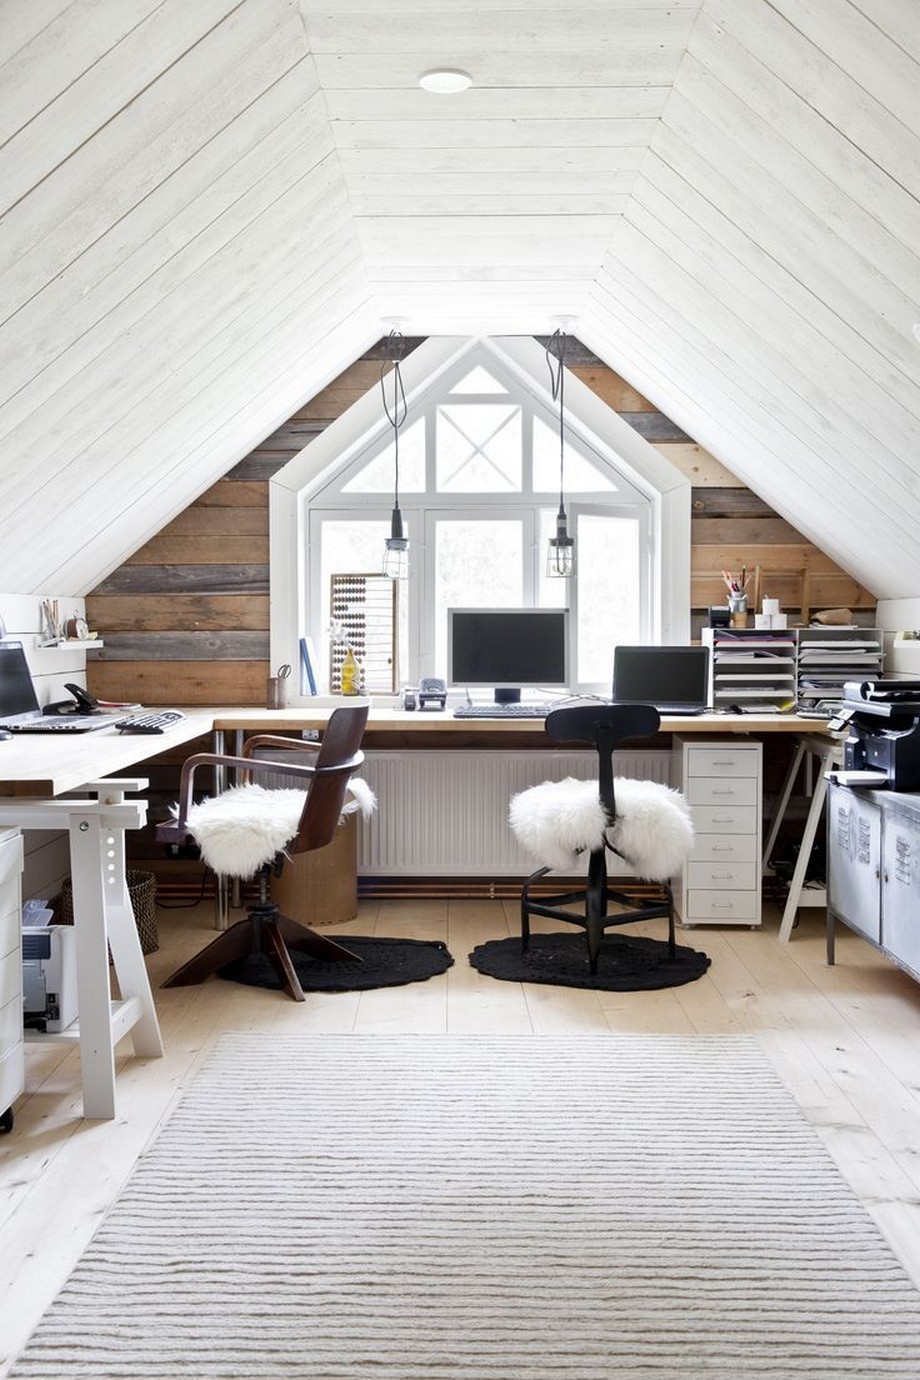 Ý tưởng thú vị không ngờ tới khi làm việc tại nhà: Biến gác xép thành văn phòng nhỏ cực xinh > Thiết kế văn phòng làm việc tại nhà đầy đủ 